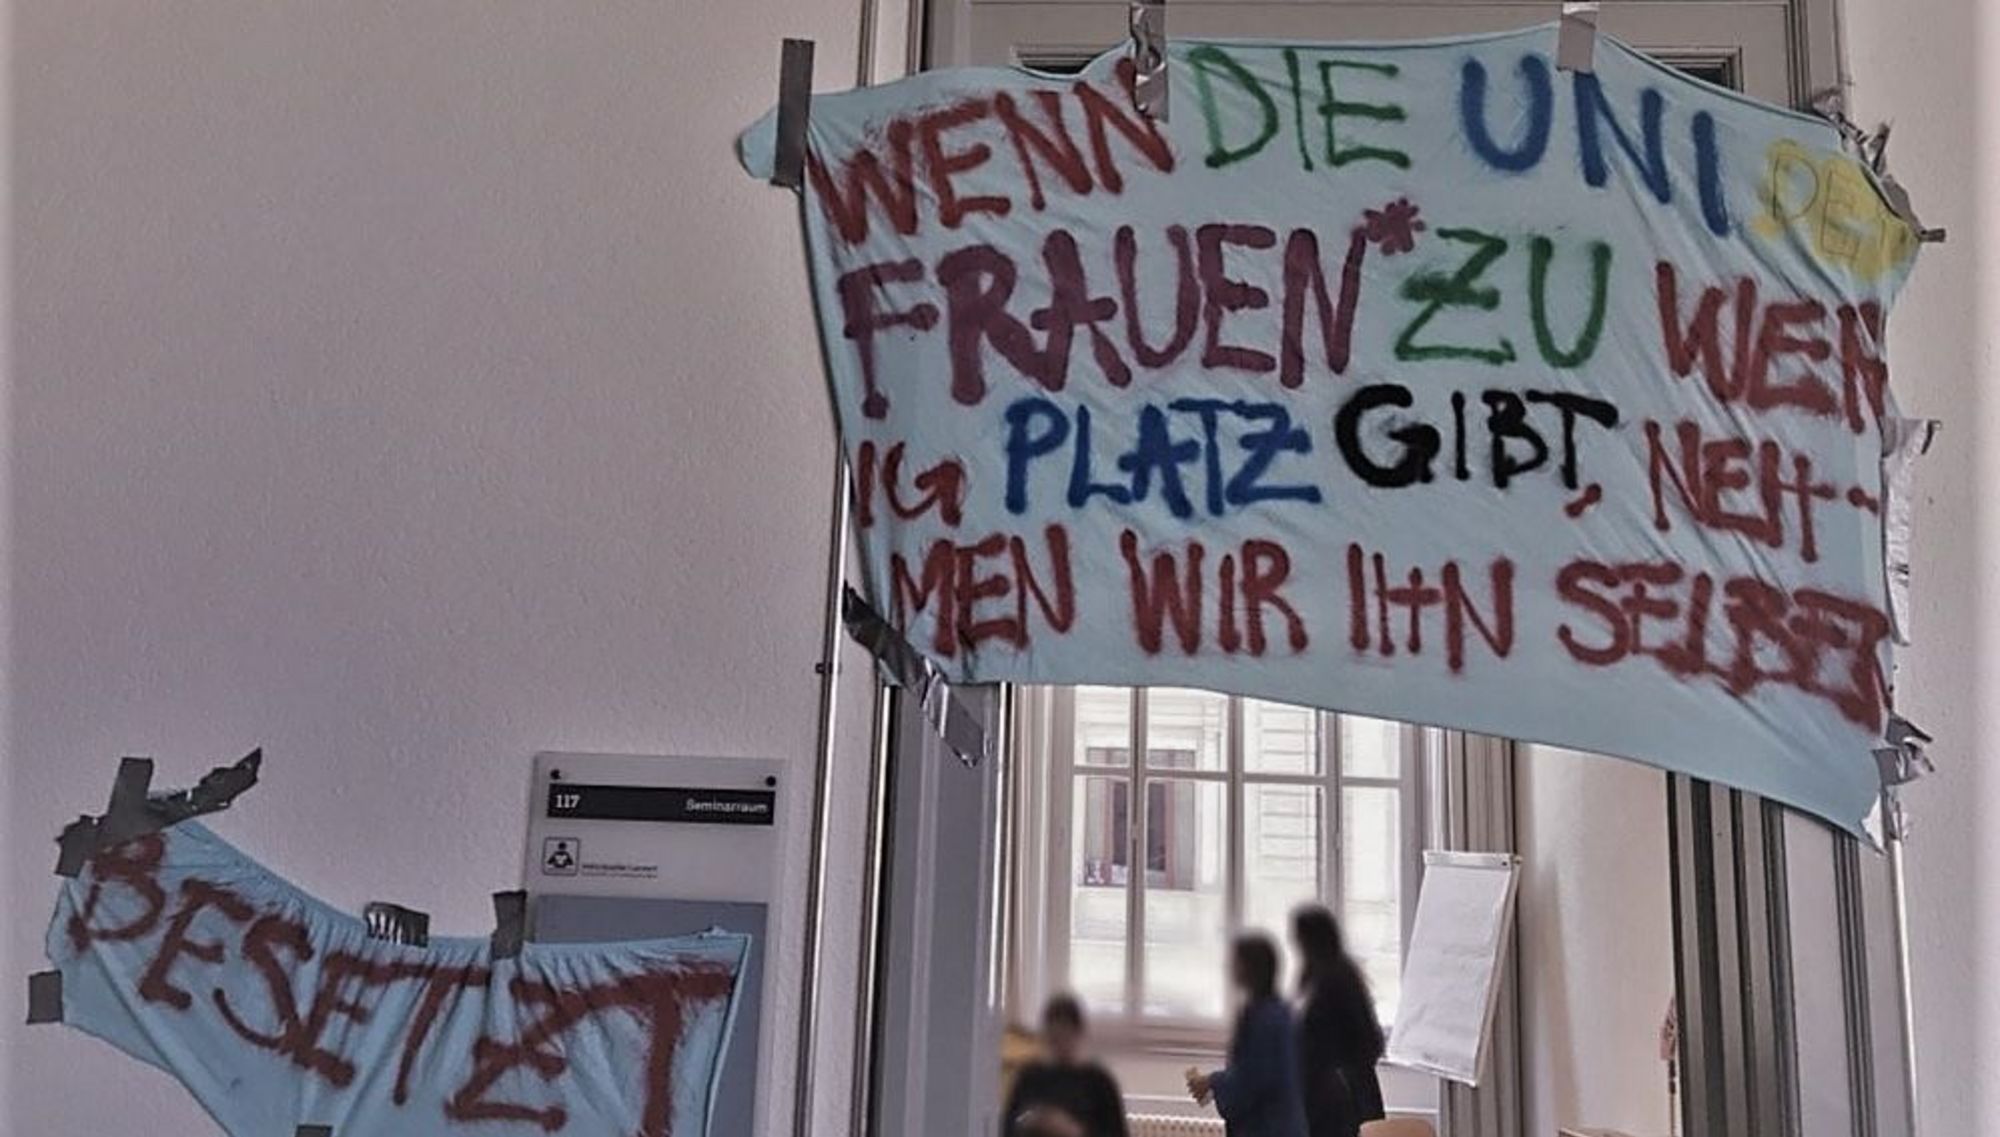 Zu sehen ist die Eingangstüre eines Raumes, der am 14. Mai an der Universität Bern besetzt wurde. Auf einem Transparent ist folgendes zu lesen: "Wenn die Uni den Frauen* zu wenig Platz gibt, nehmen wir ihn selber." 